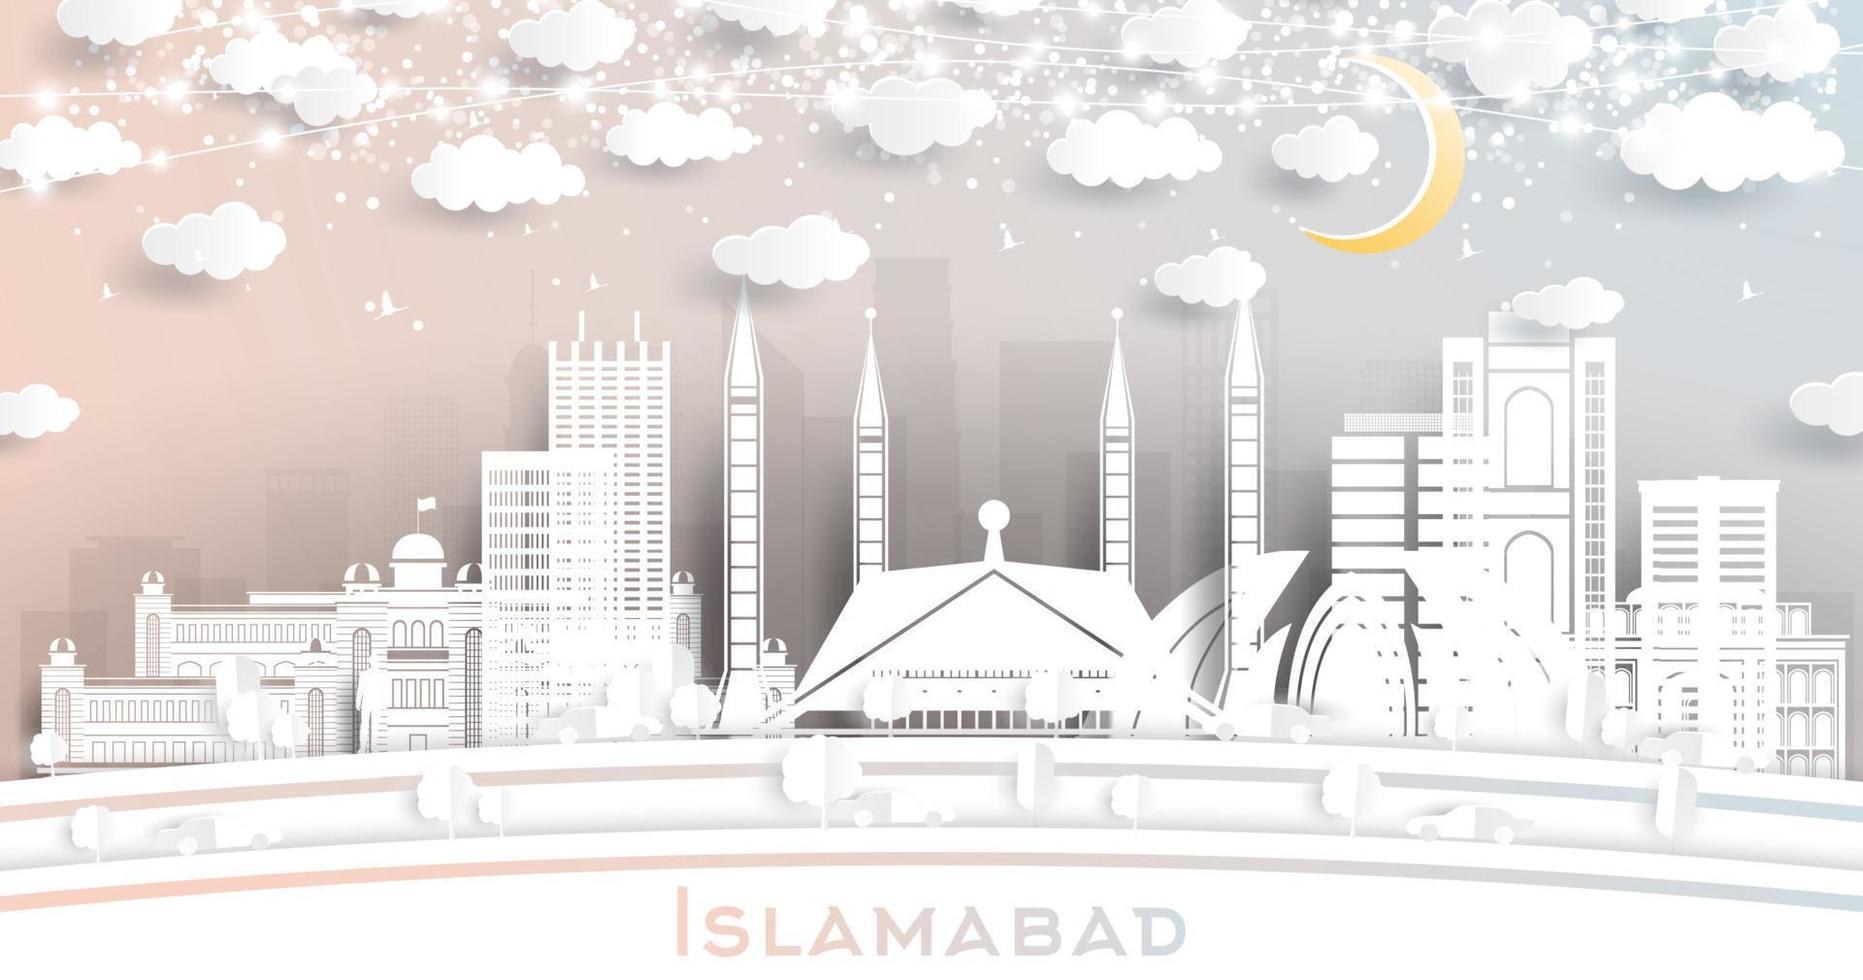 islamabad Pakistan stad horizon in papier besnoeiing stijl met wit gebouwen, maan en neon guirlande. vector